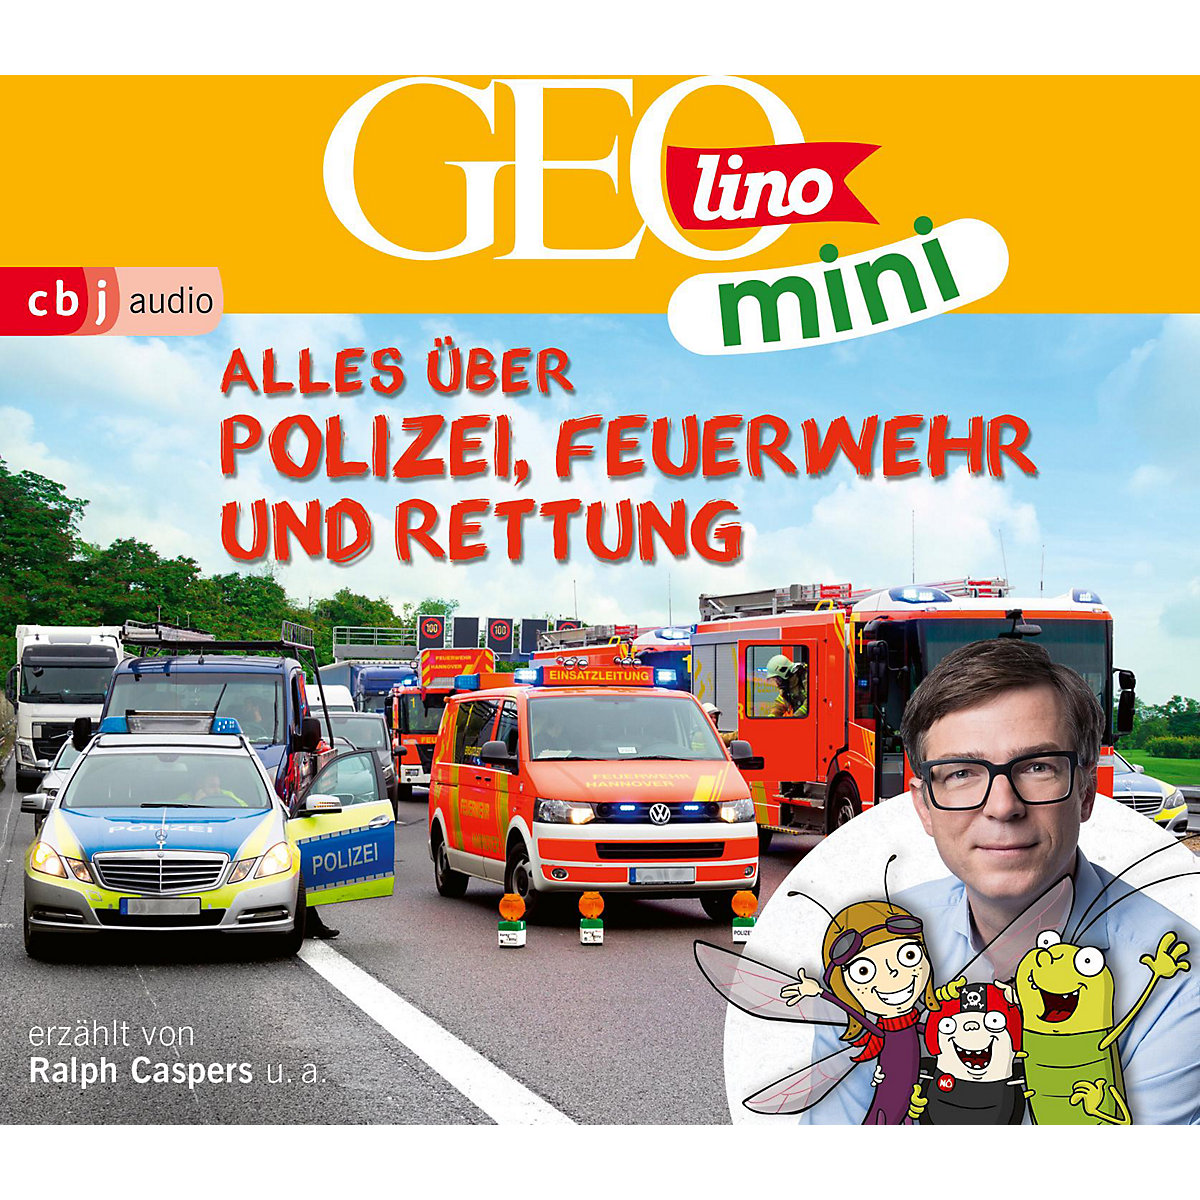 Random House Verlag GEOlino mini 11 Alles über Polizei Feuerwehr und Rettung